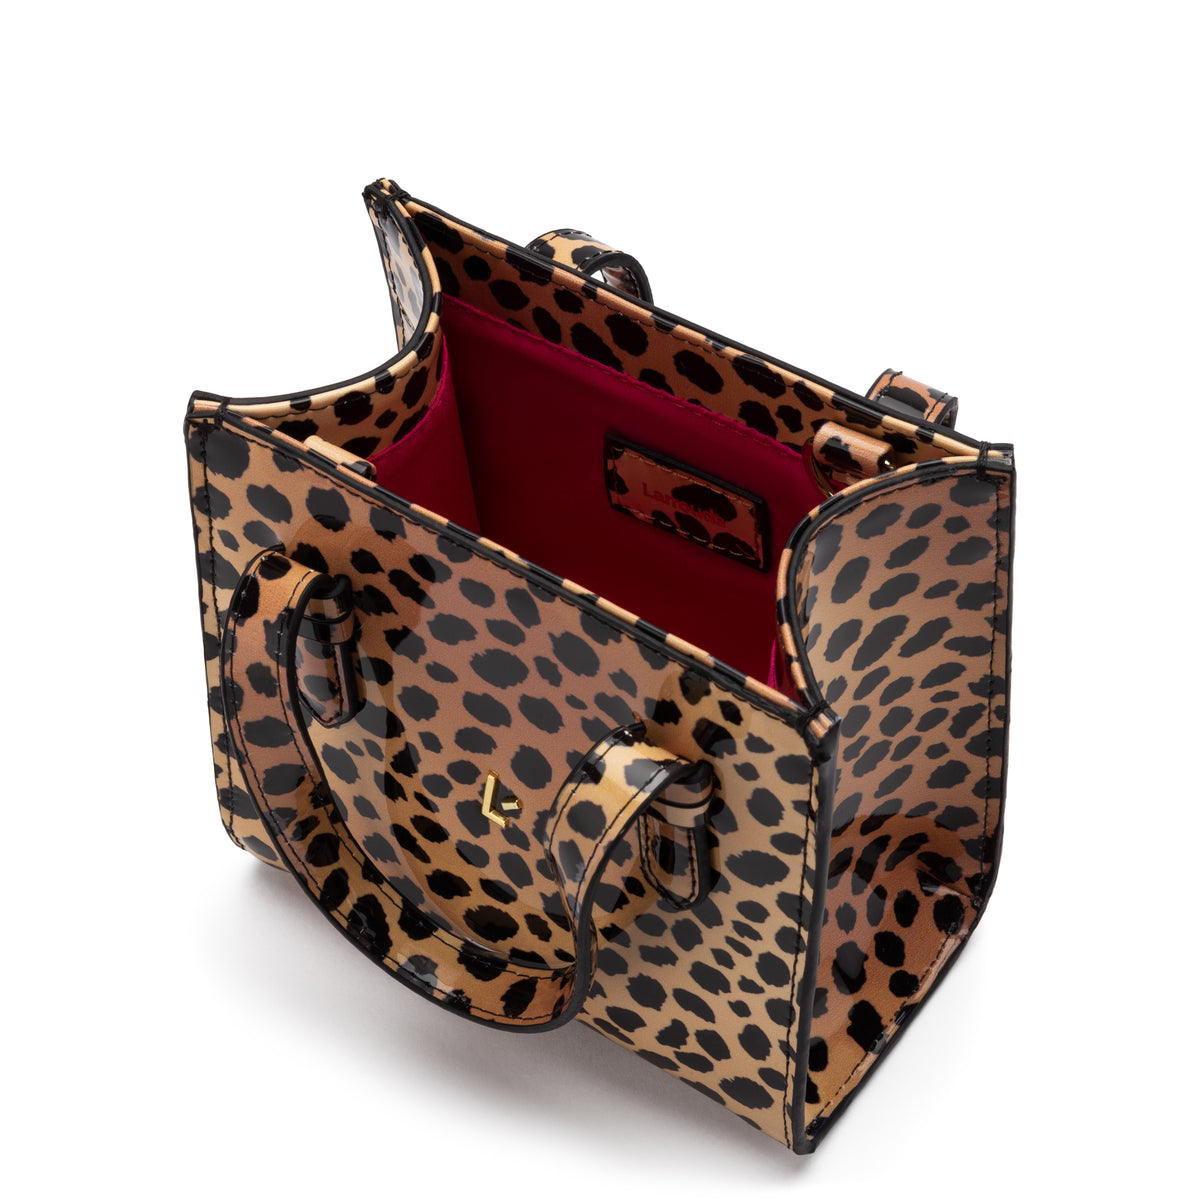 Mini Phoebe Tote Bag In Cheetah Print Vegan Patent Leather